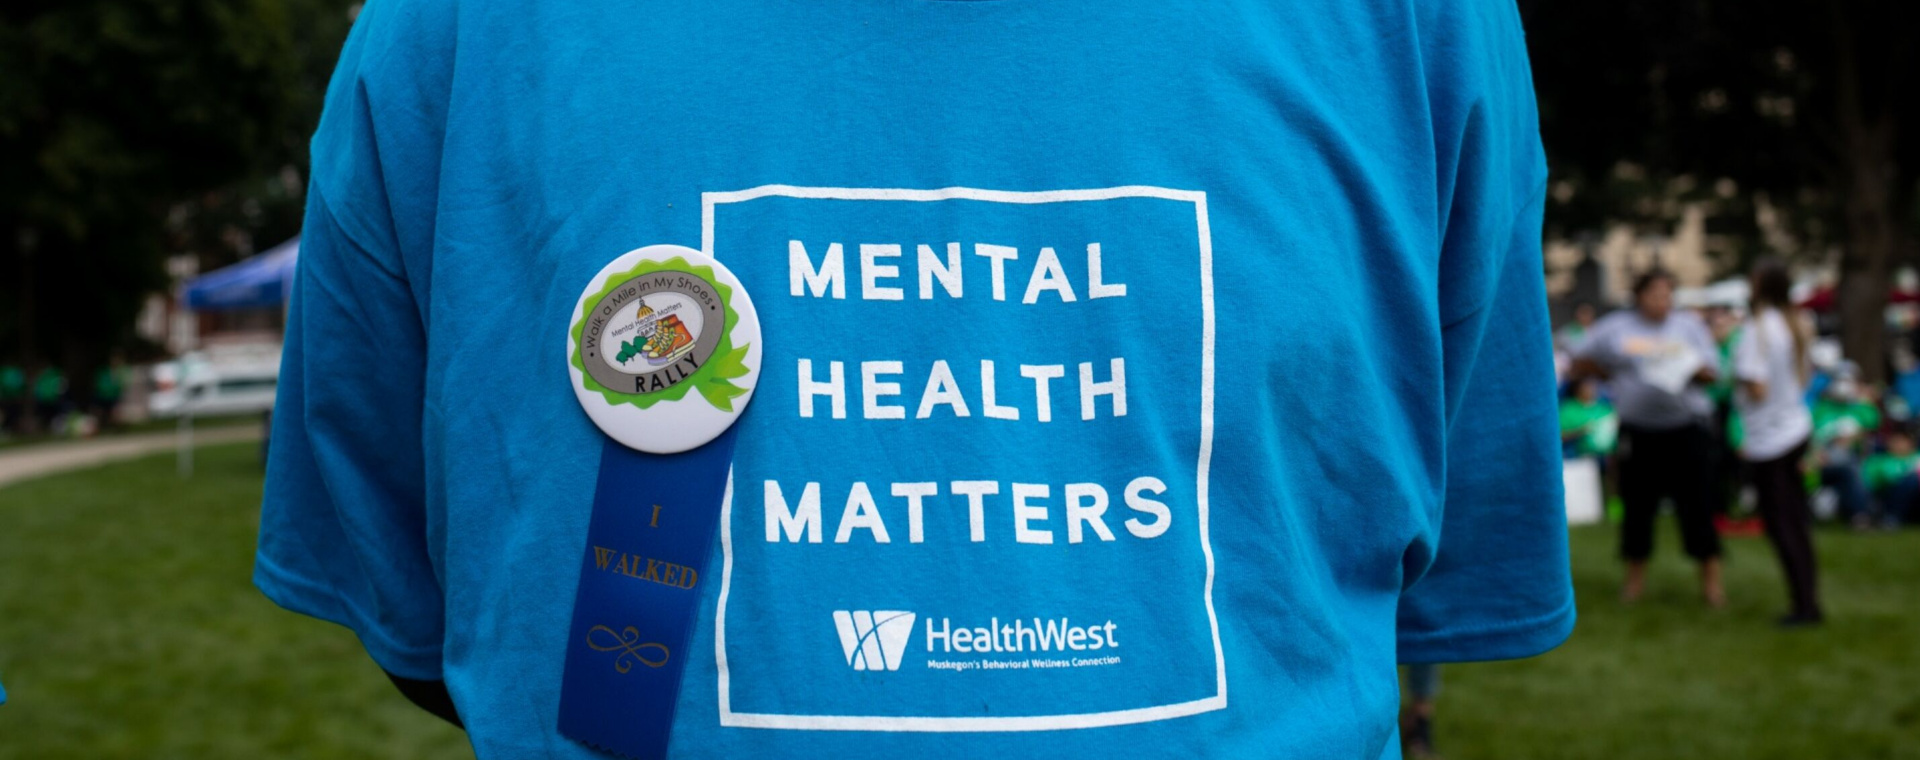 Seorang advokat menggunakan kaus bertuliskan 'Mental Health Matters' dalam aksi unjuk rasa untuk meningkatkan kesadaran publik soal isu kesehatan mental di Michigan, Amerika Serikat pada Kamis (15/9/2022). Tumpukan utang pinjol dinilai menjadi salah satu ancaman bagi kesehatan mental masyarakat. - Bloomberg/Emily Elconin